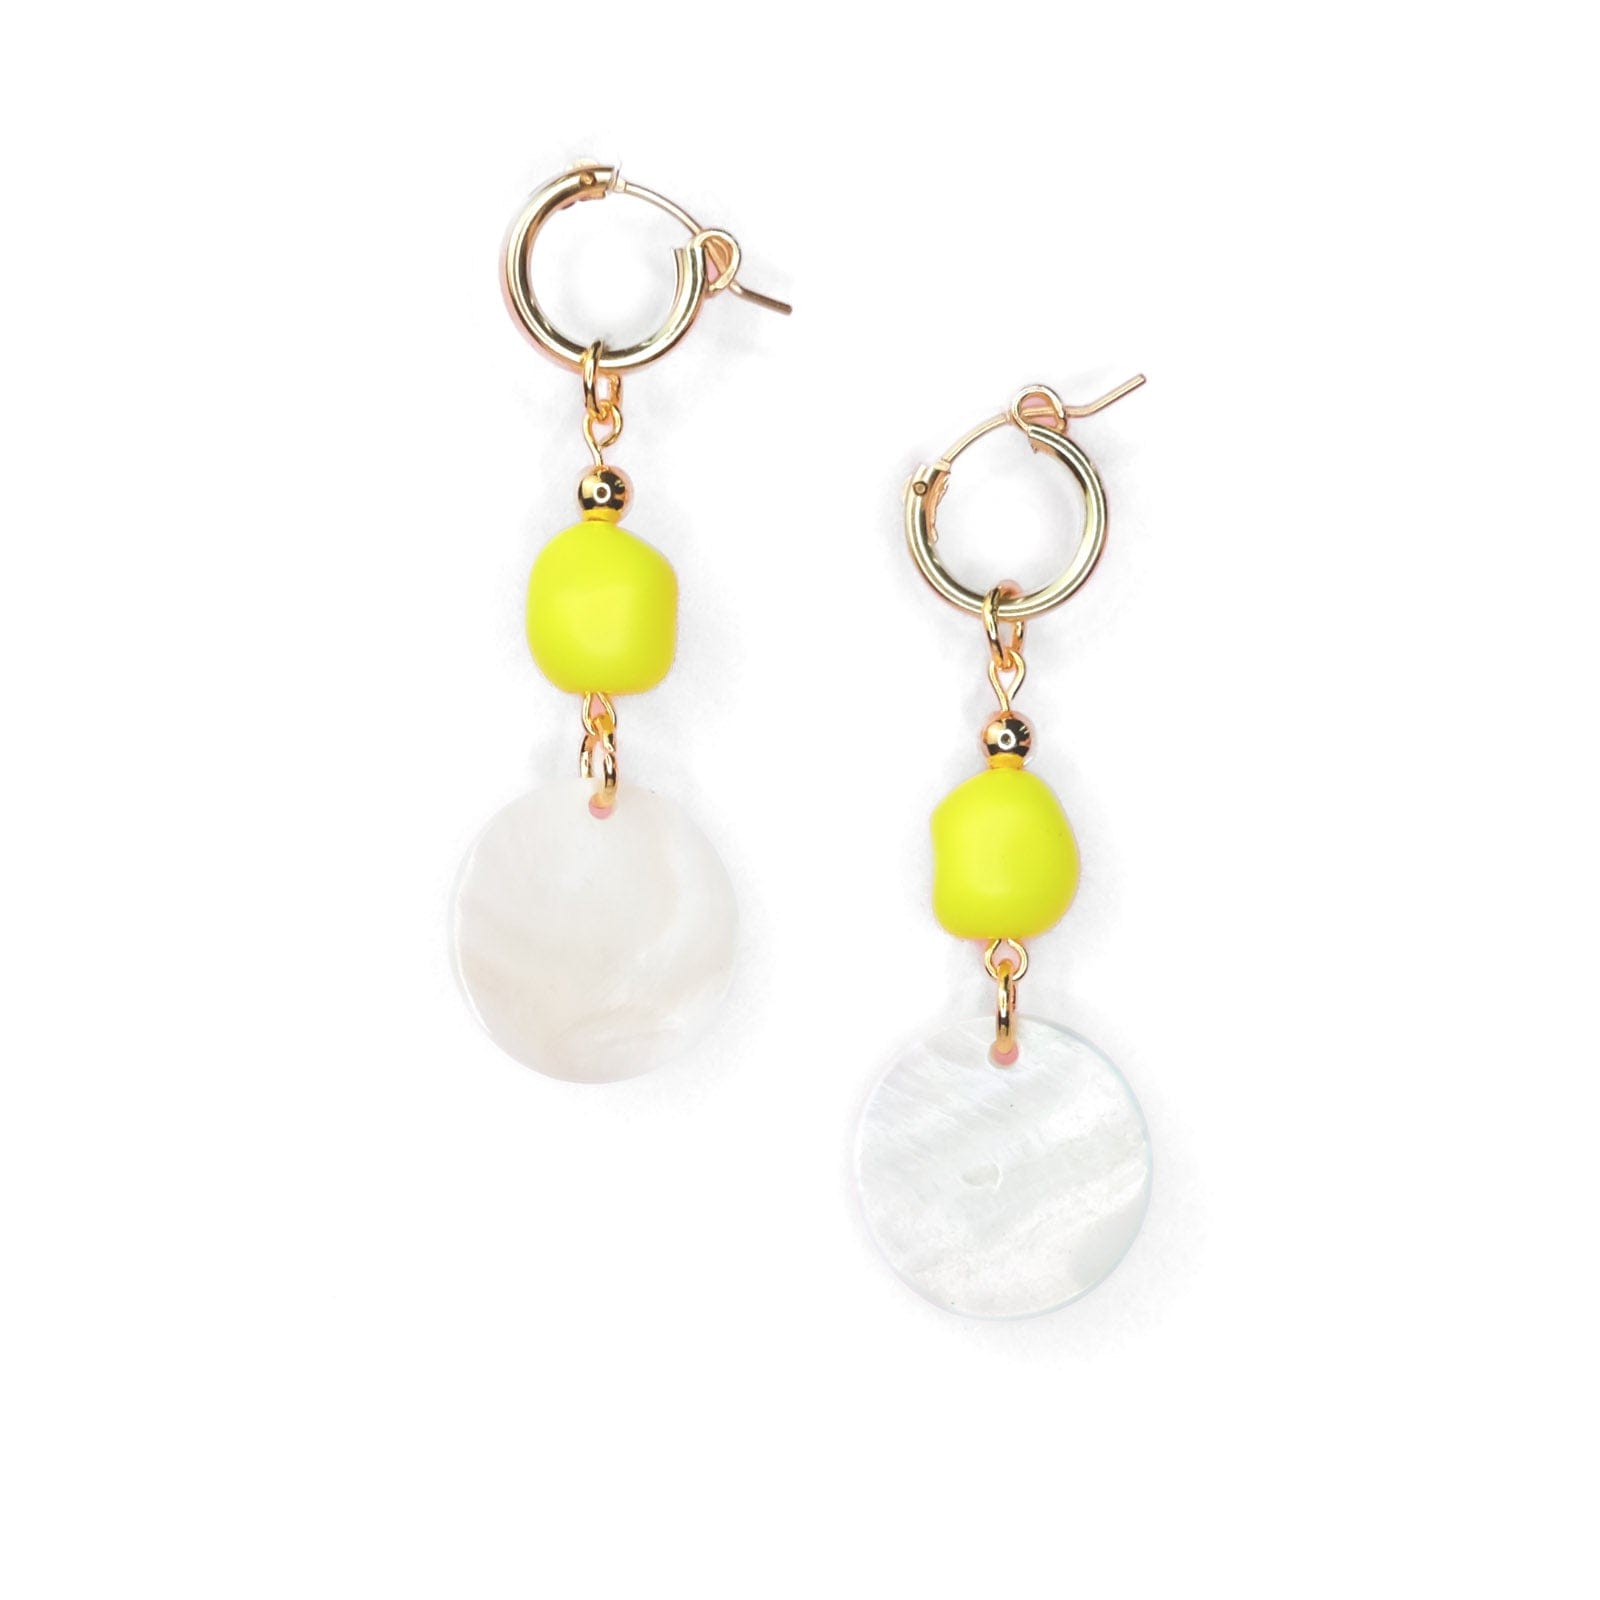 Dangly hoop earrings in neon yellow and pearl